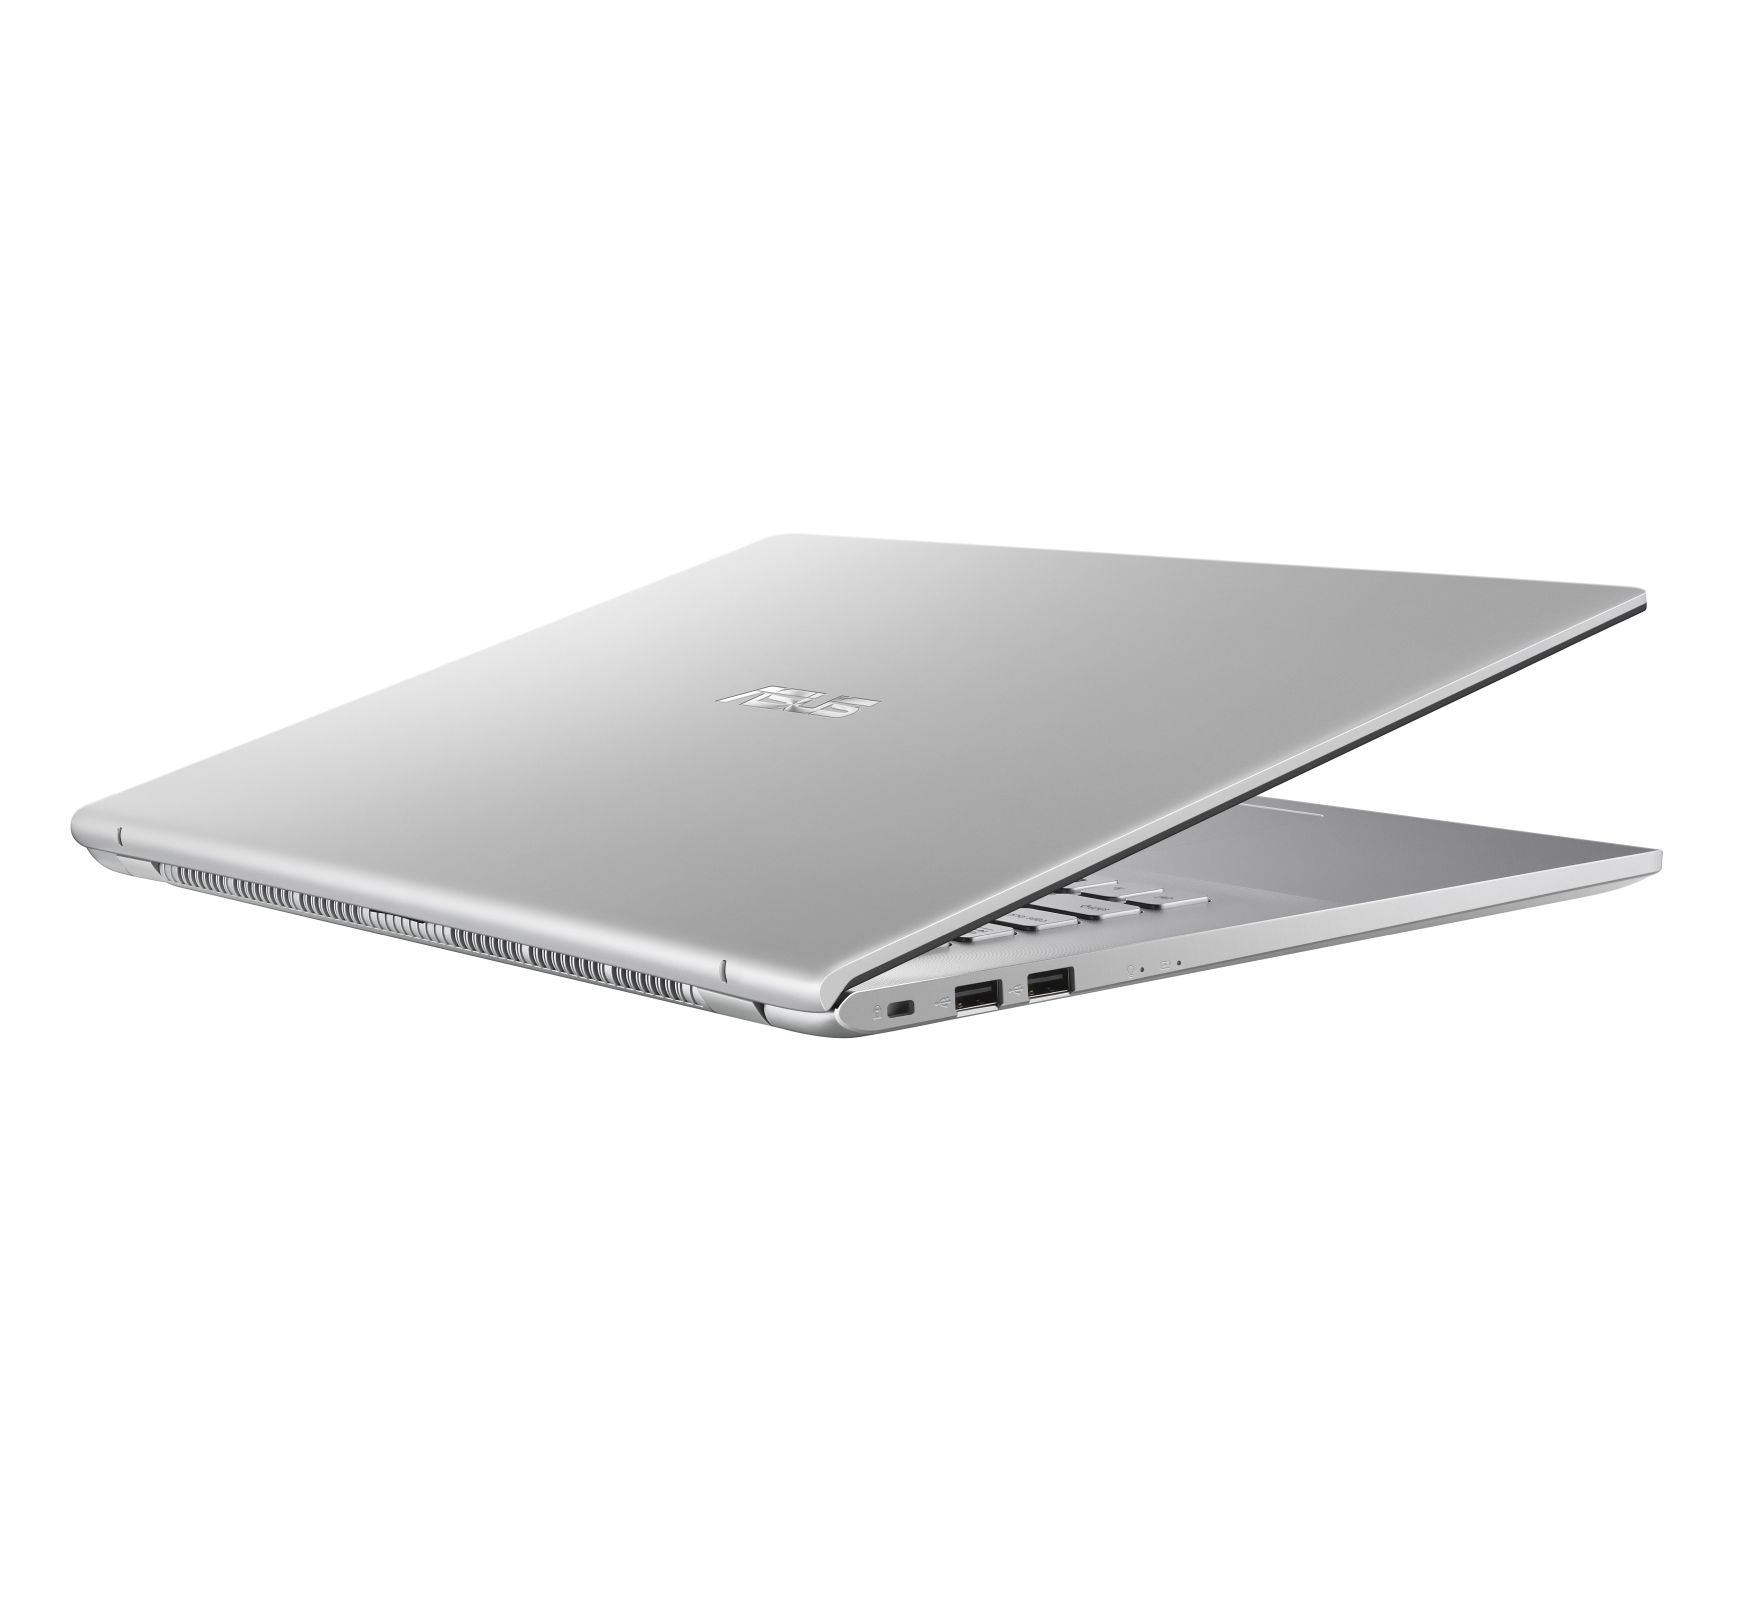 ASUS Vivo BK S712JA-BX700W, GB Notebook mit 17,3 silber Display, Core™ 512 UHD RAM, i3 Prozessor, Intel® Intel® Graphics, SSD, Zoll 8 GB